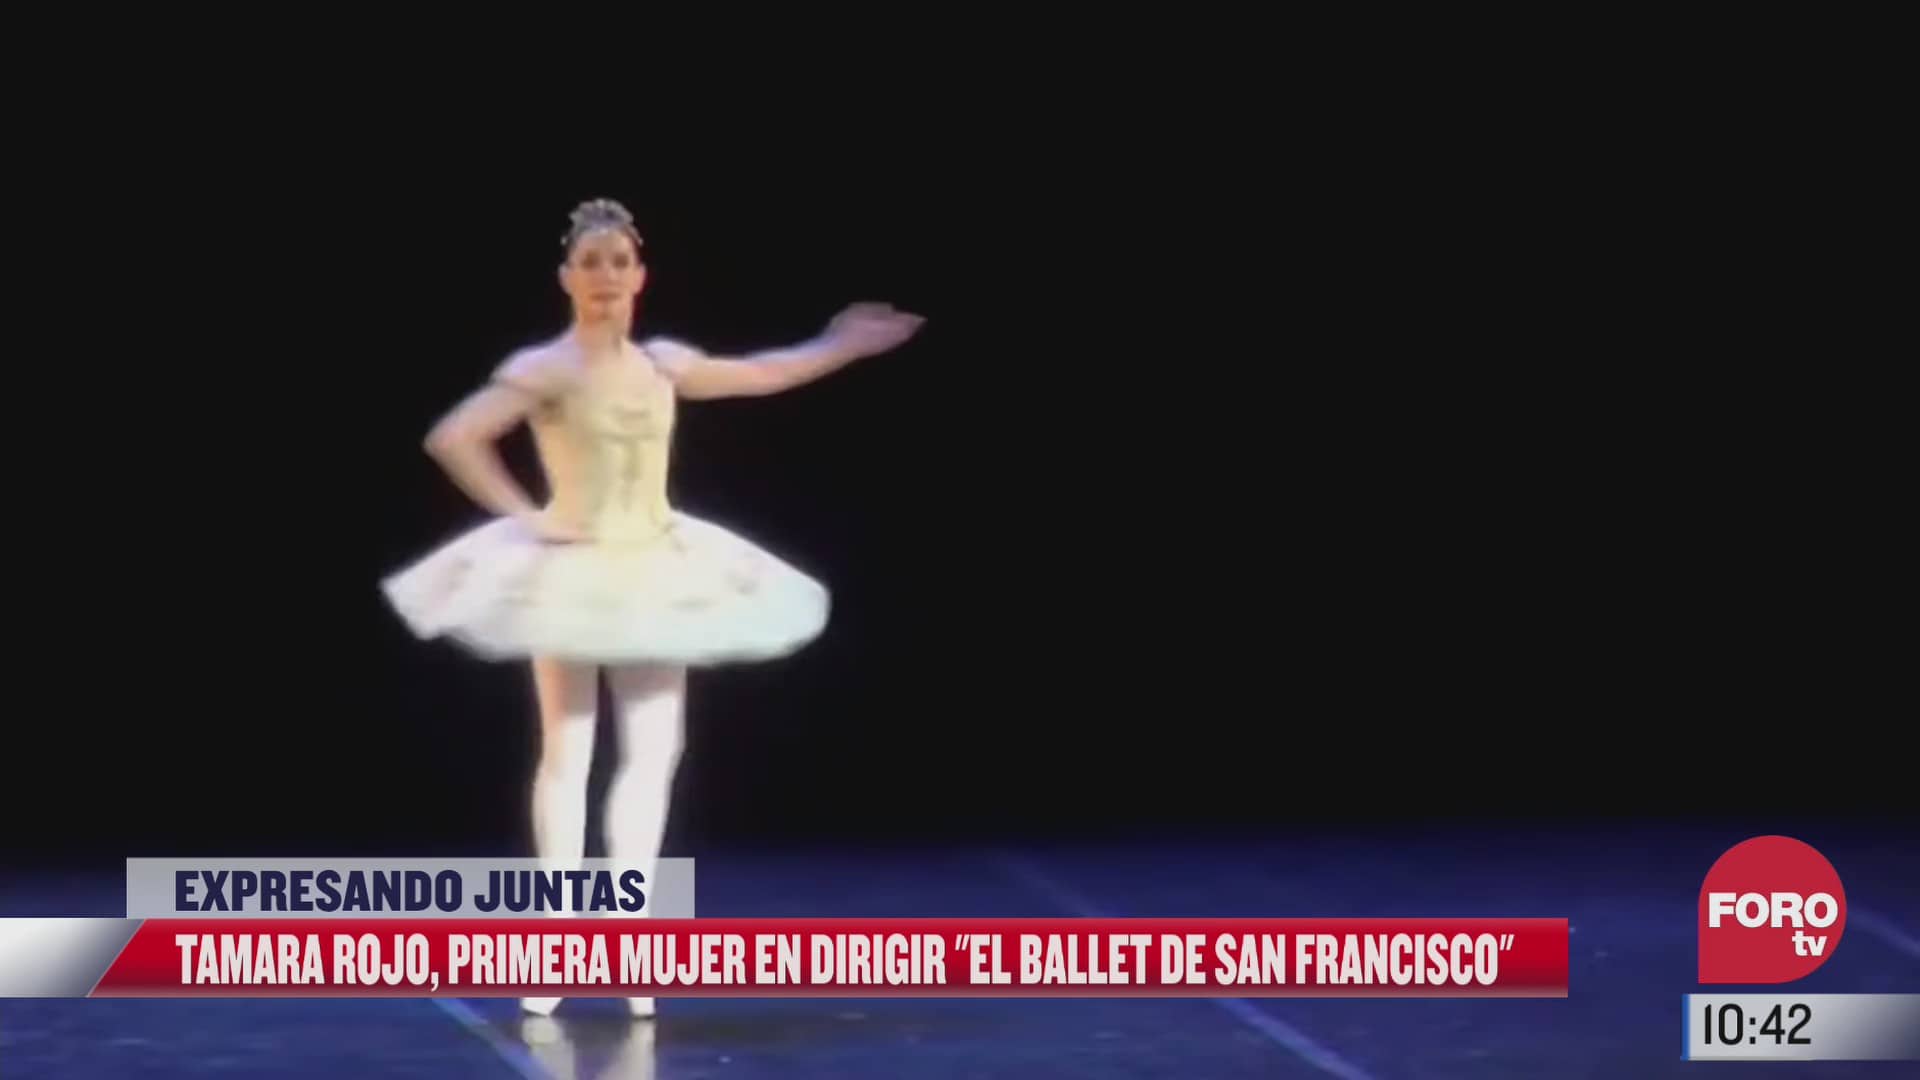 expresandojuntas tamara rojas la primera mujer en dirigir el ballet de san francisco